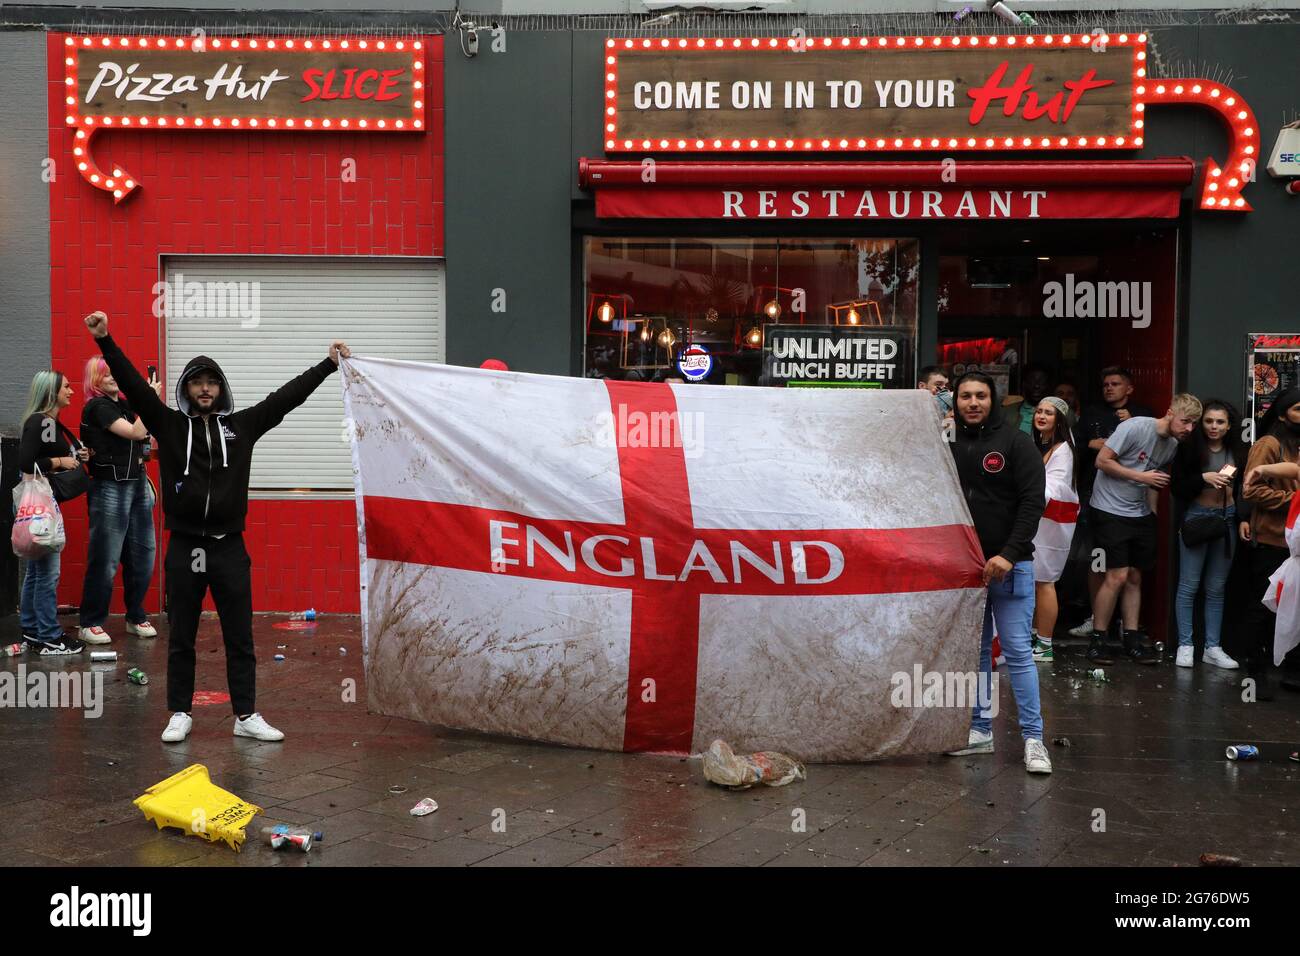 Londres, Royaume-Uni. 11 juillet 2021. Les fans de football d'Angleterre qui célèbrent à Leicester Square avant la finale Italie / Angleterre de 2000 euros à Leicester Square, Londres, et créant une énorme quantité de déchets. Crédit : Paul Brown/Alay Live News Banque D'Images